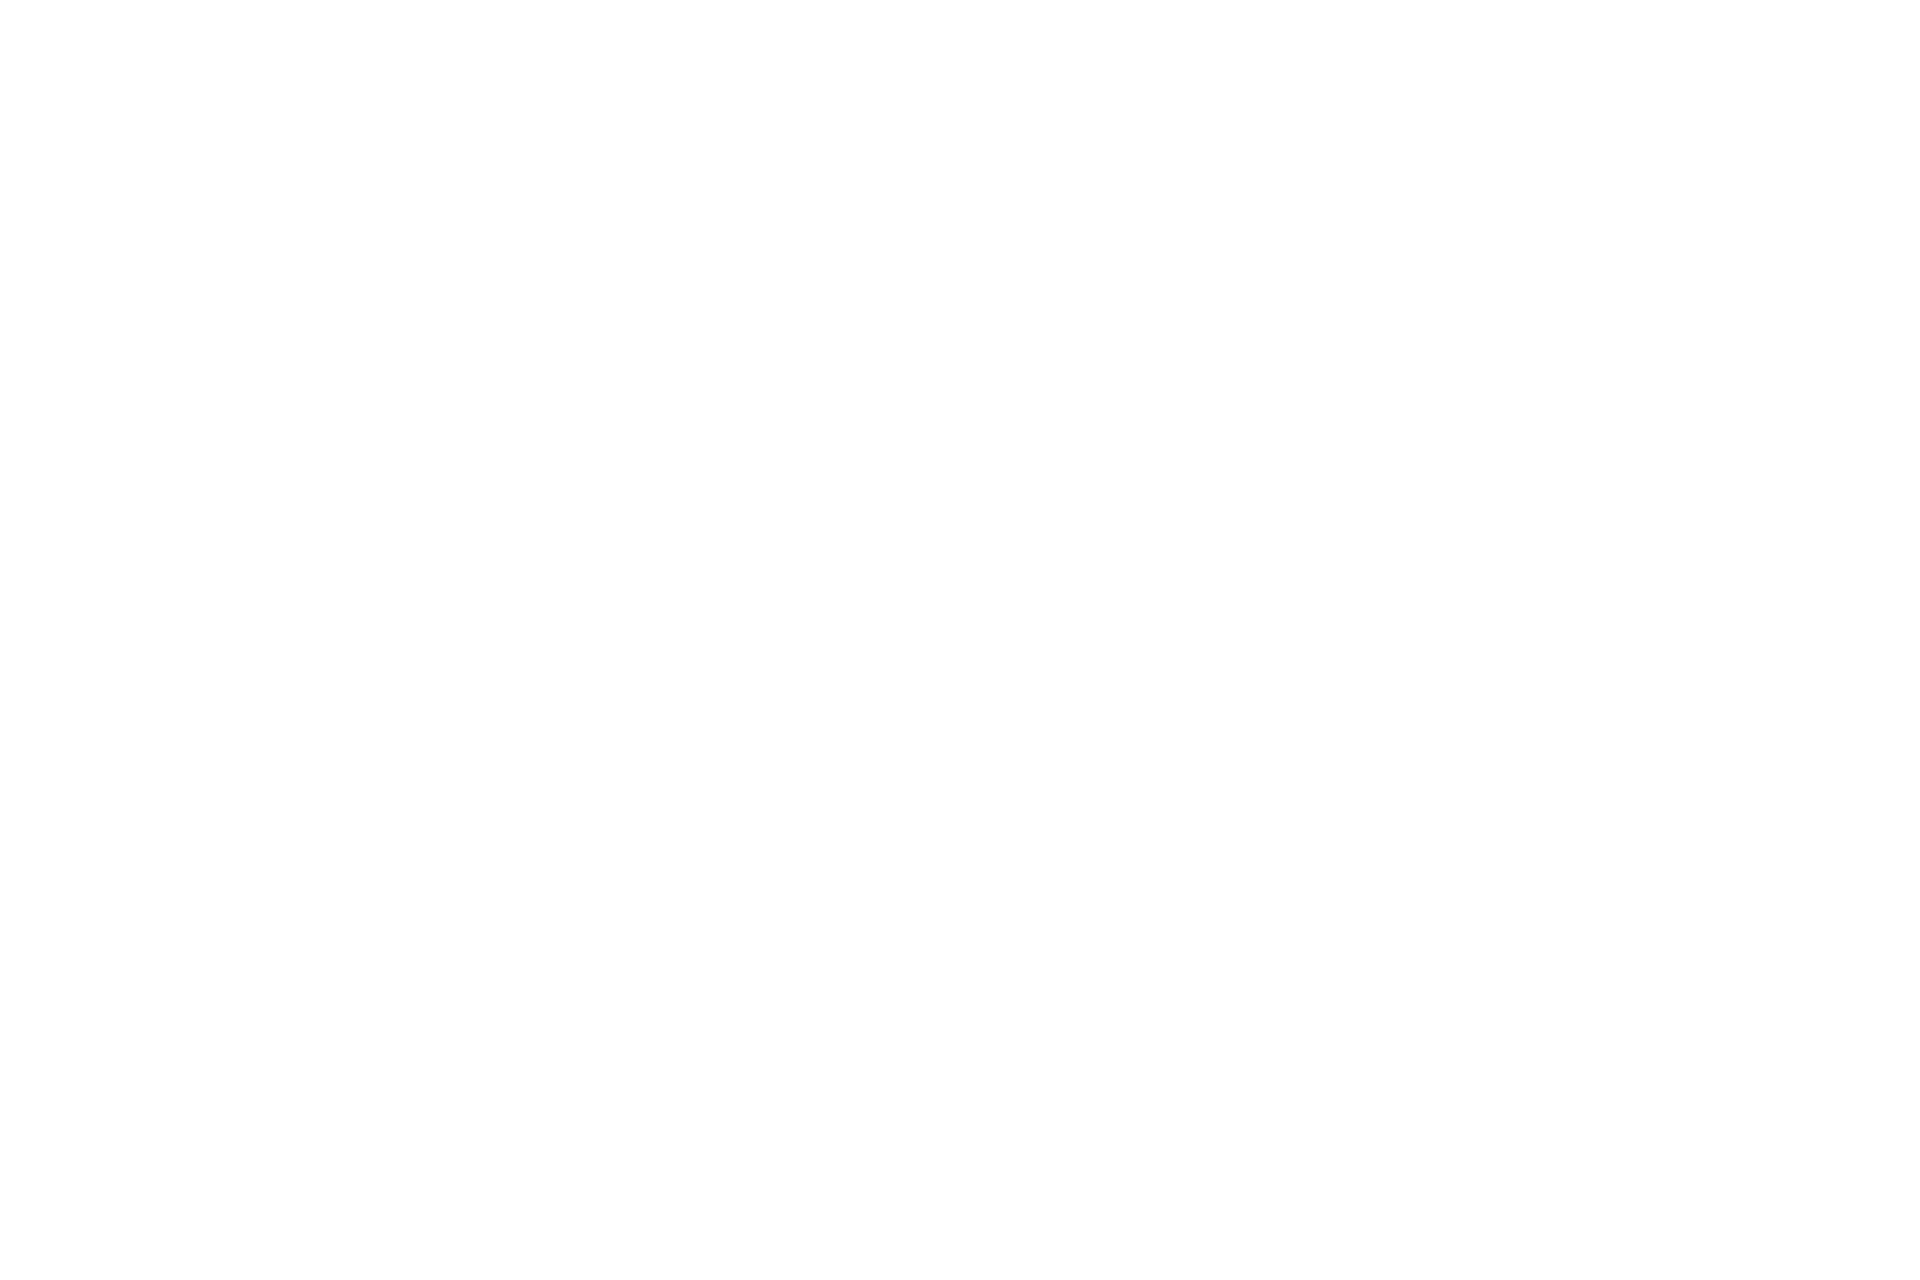 x-code.jp